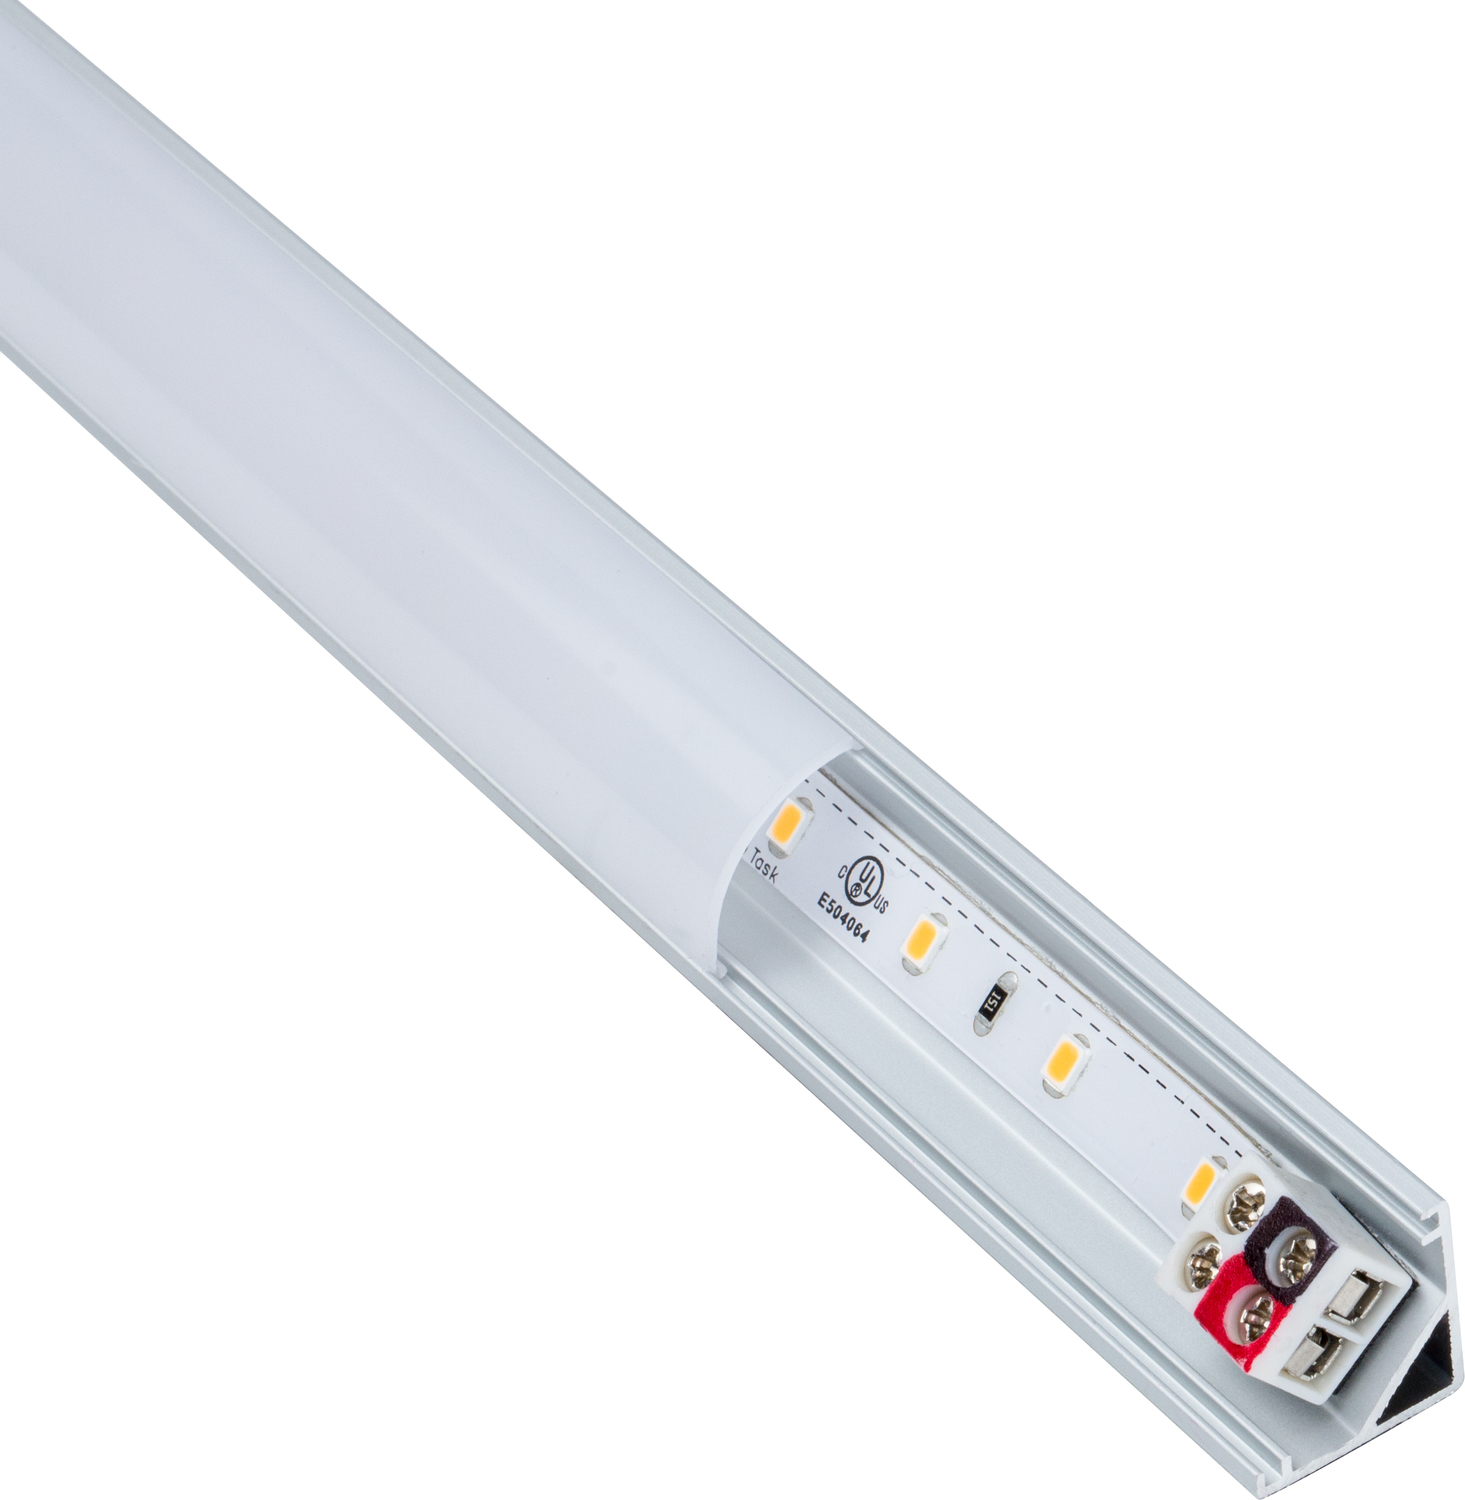 cabinet led slim Task Lighting Linear Fixtures;Single-white Lighting Aluminum